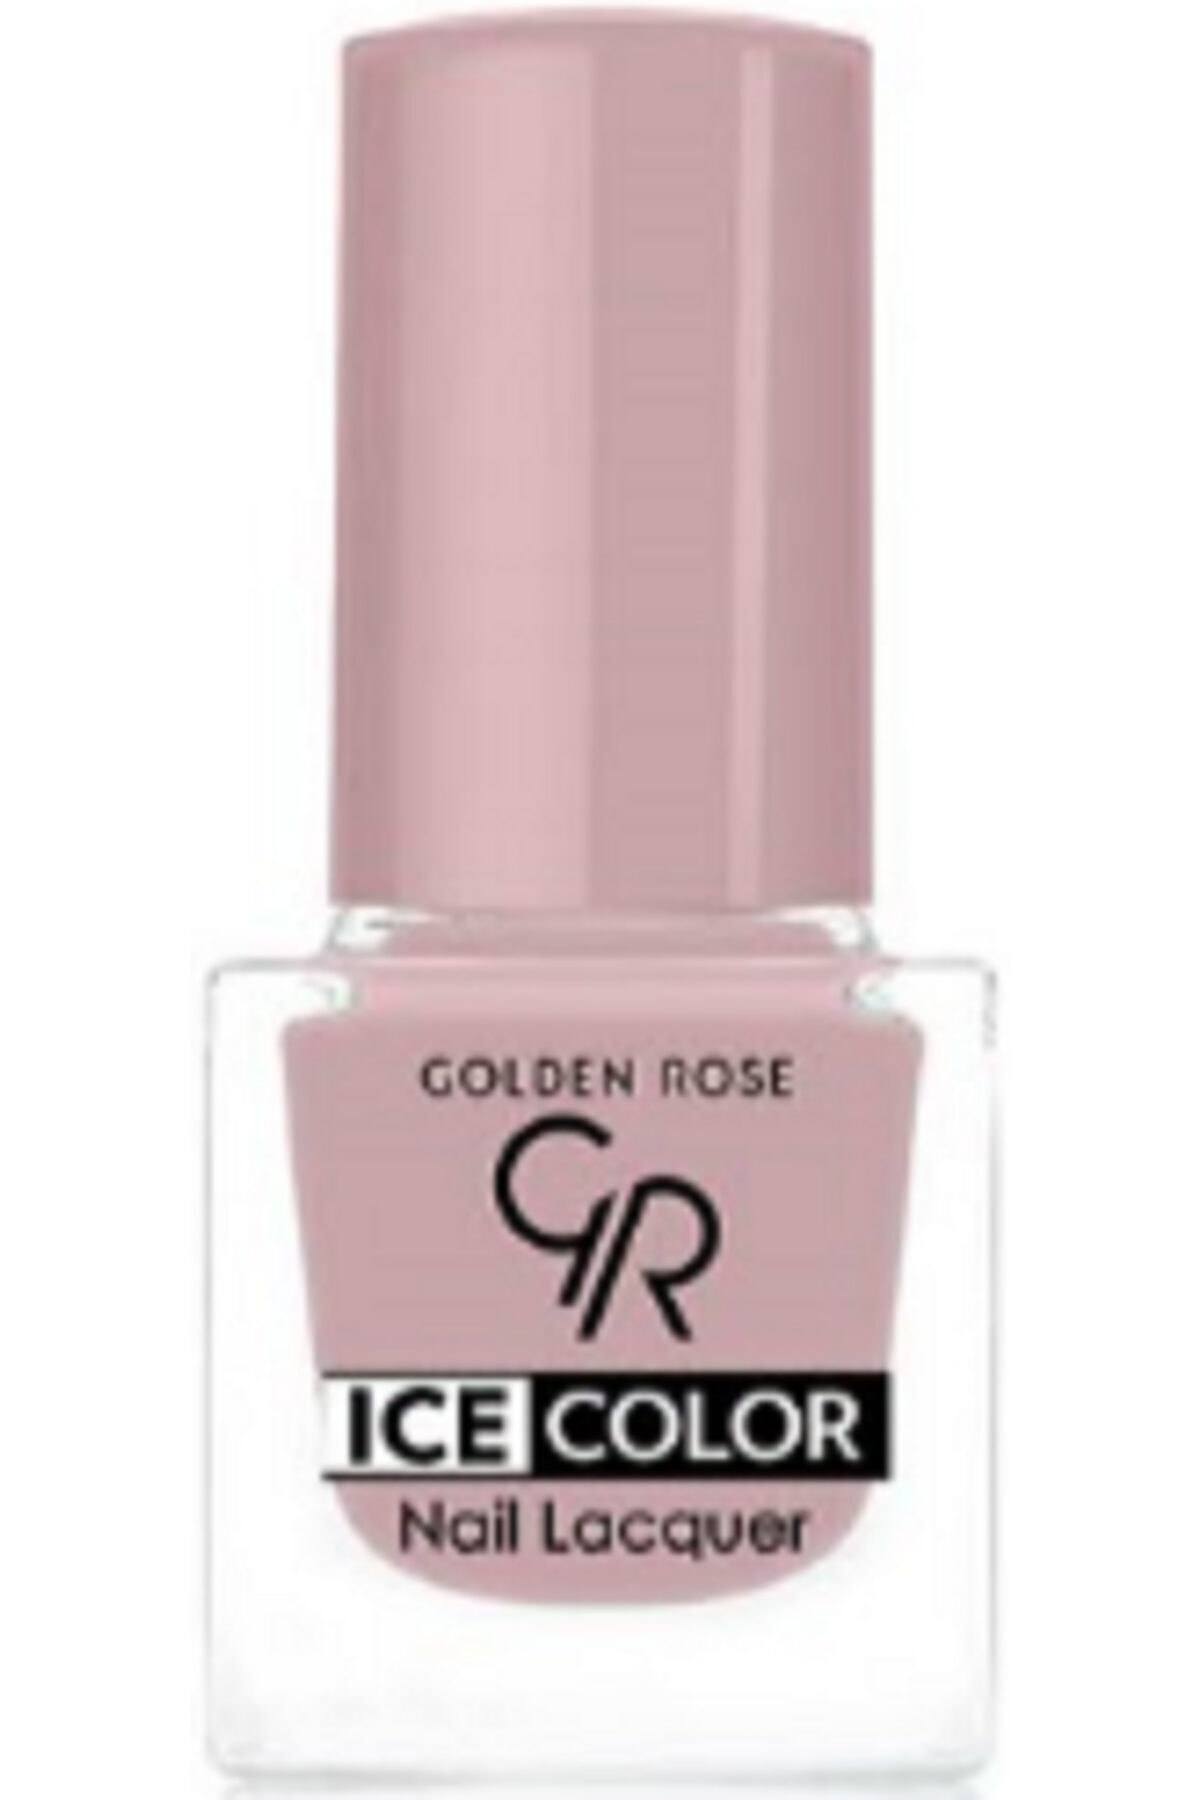 لاک ناخن یخی آیس چیک ICE شماره 184 رنگ صورتی یاسی نود گلدن رز Golden Rose